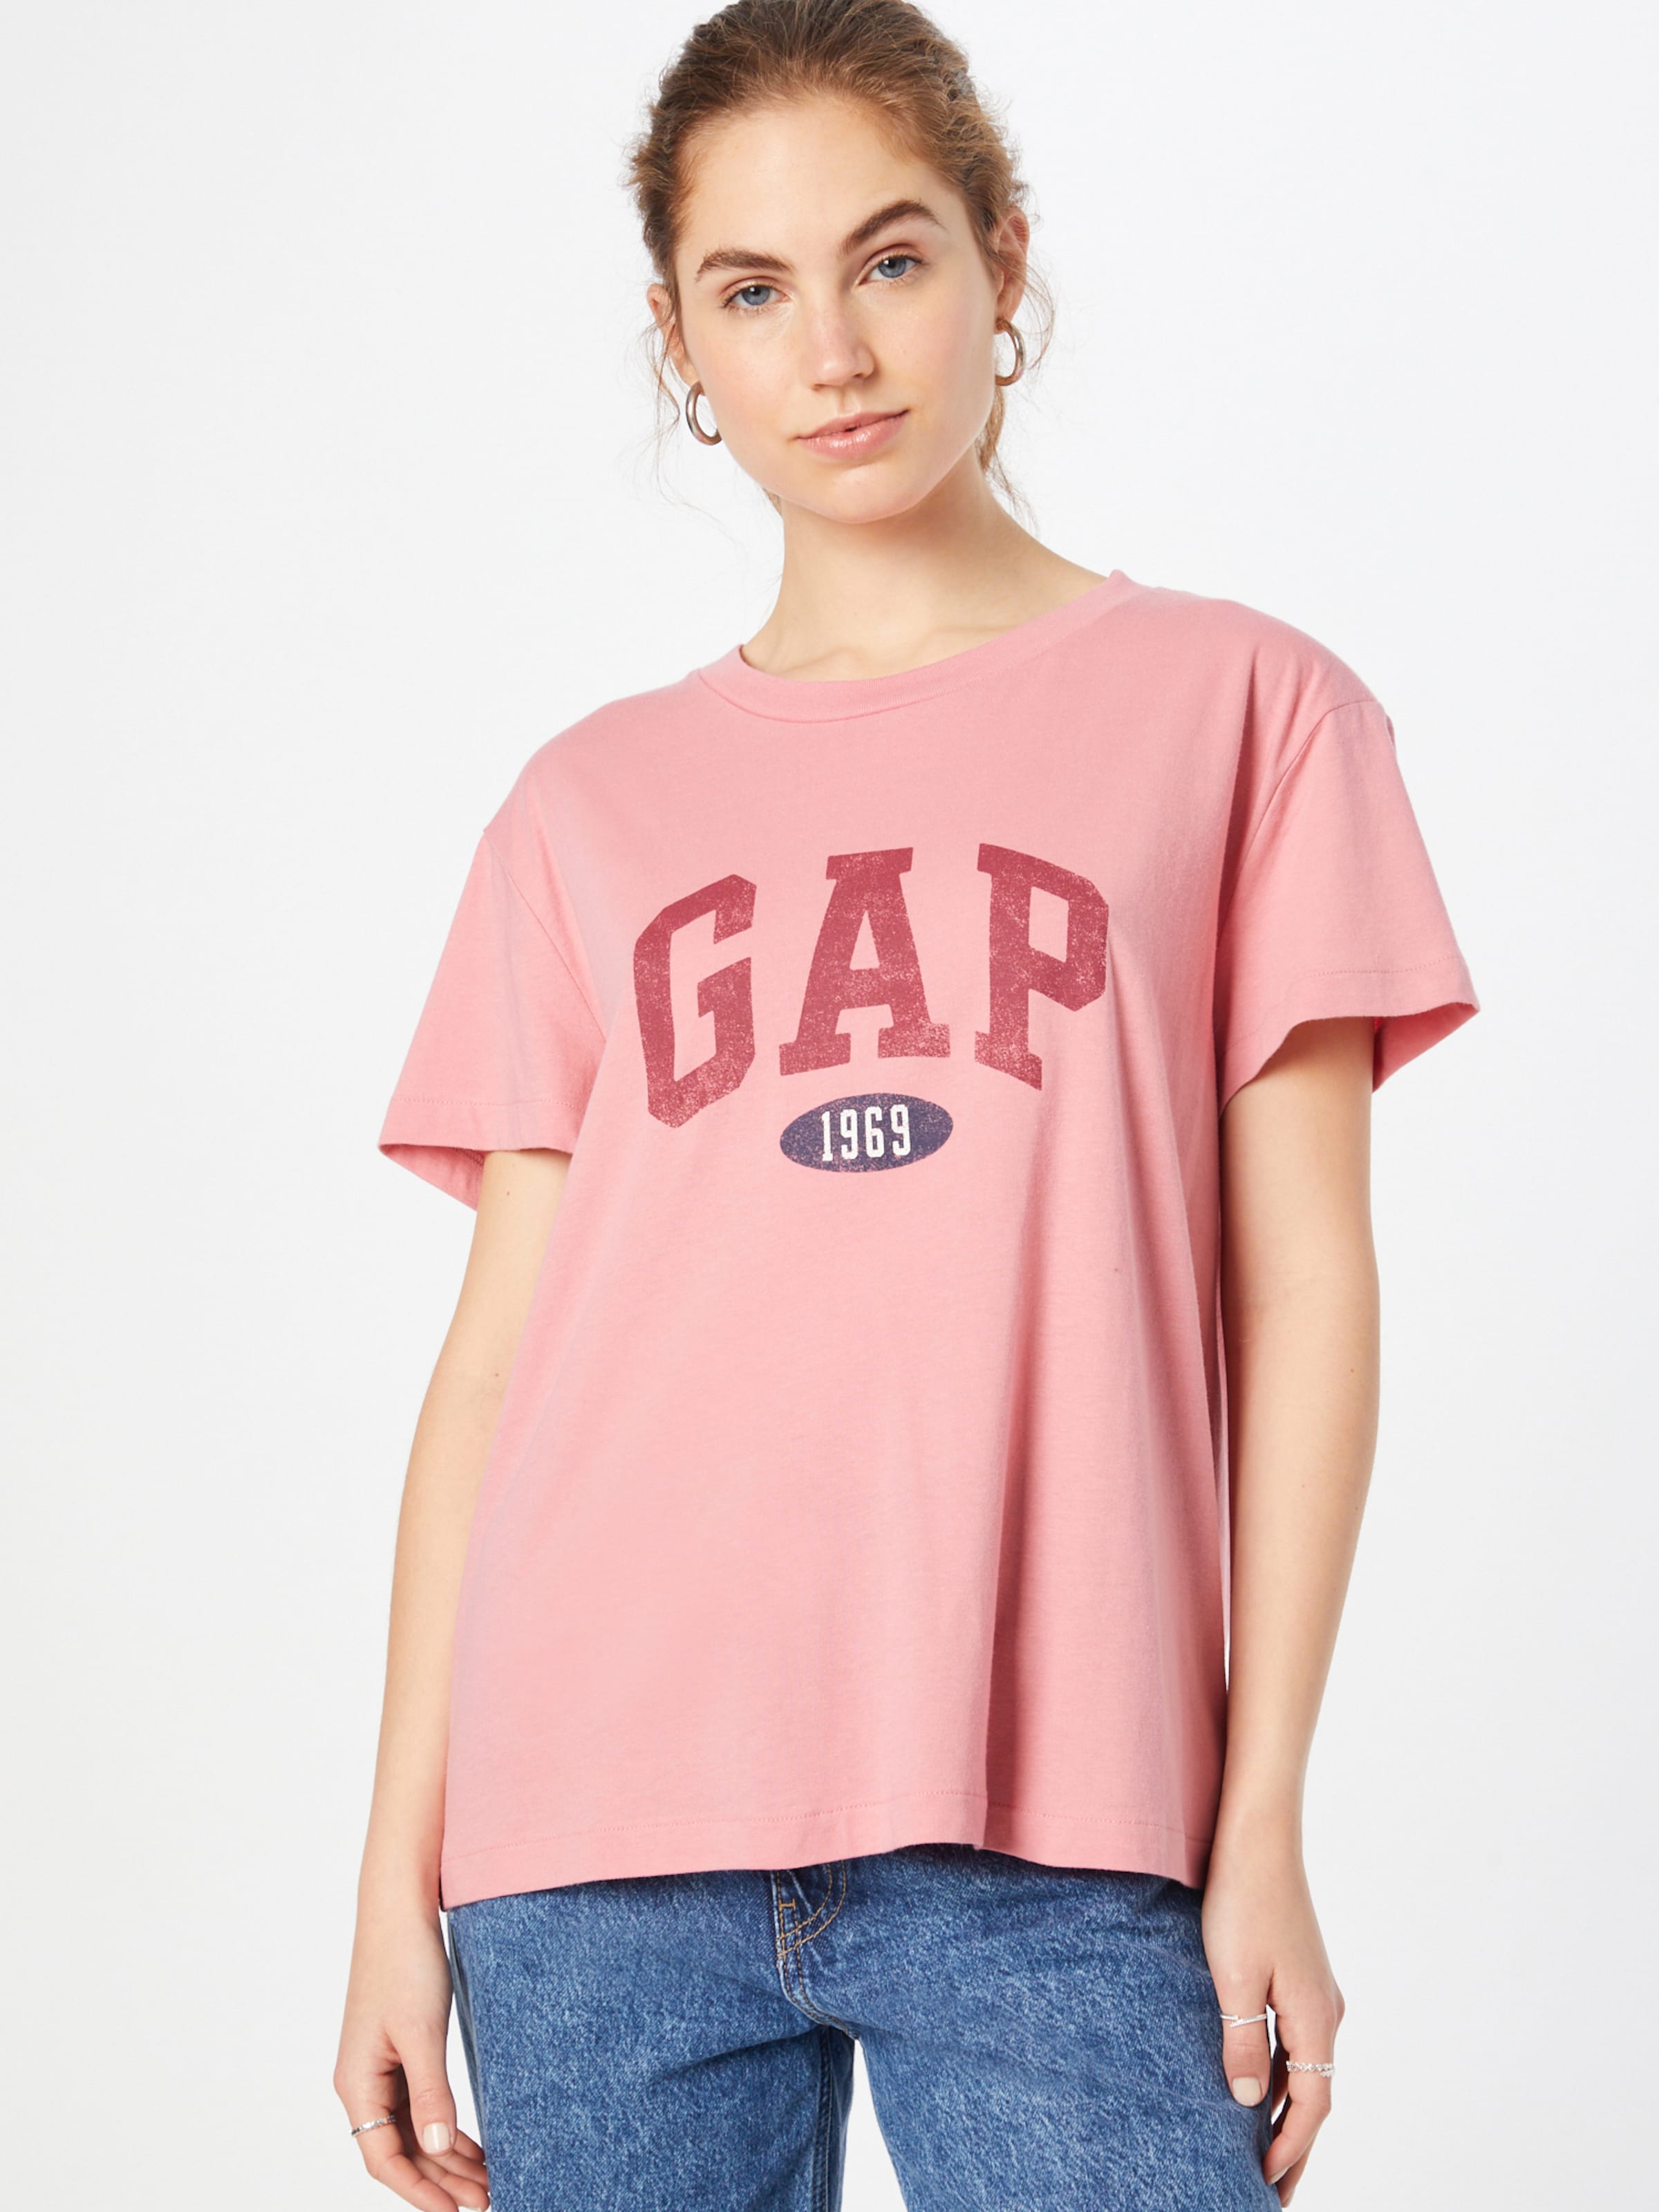 gap t shirts for women